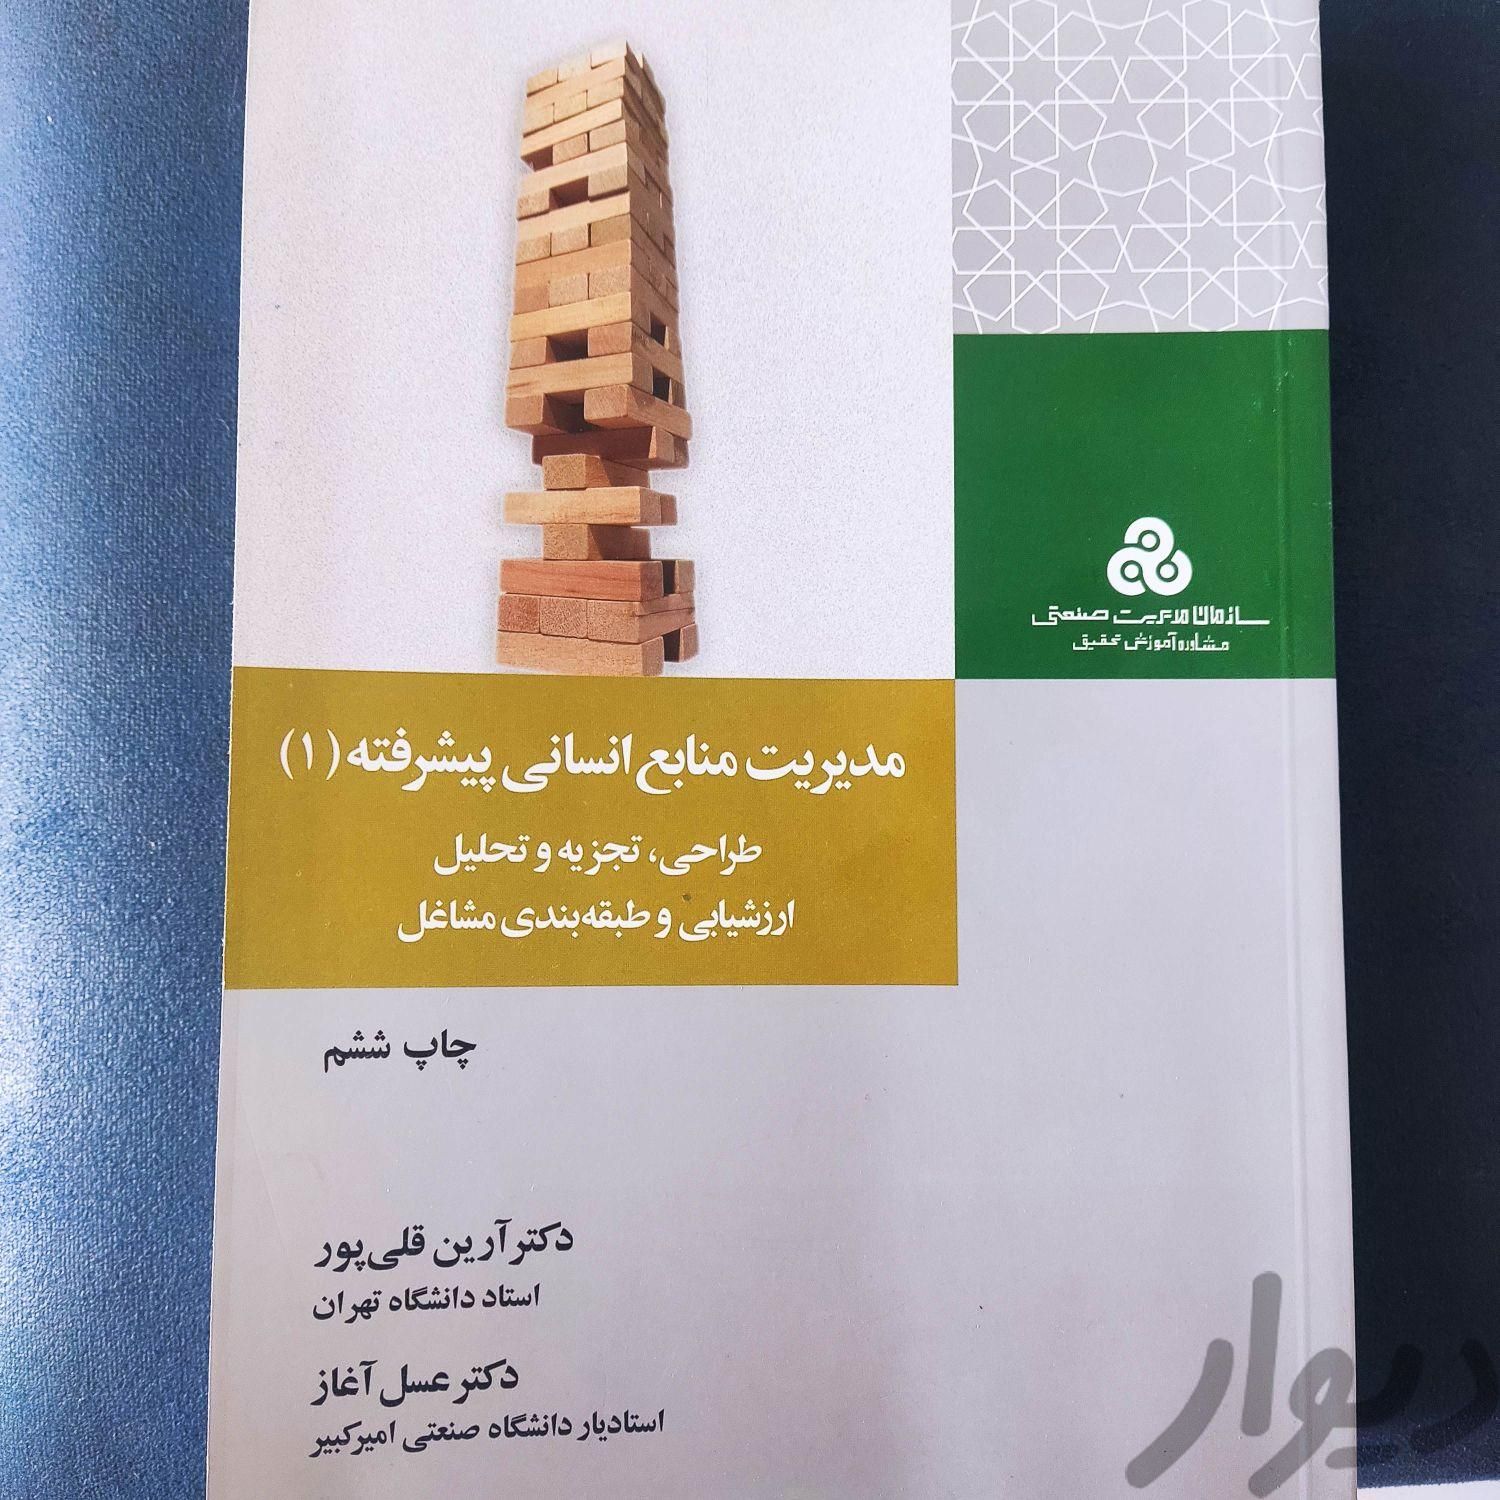 مدیریت منابع انسانی پیشرفته|کتاب و مجله آموزشی|تهران, اندیشه (شهر زیبا)|دیوار